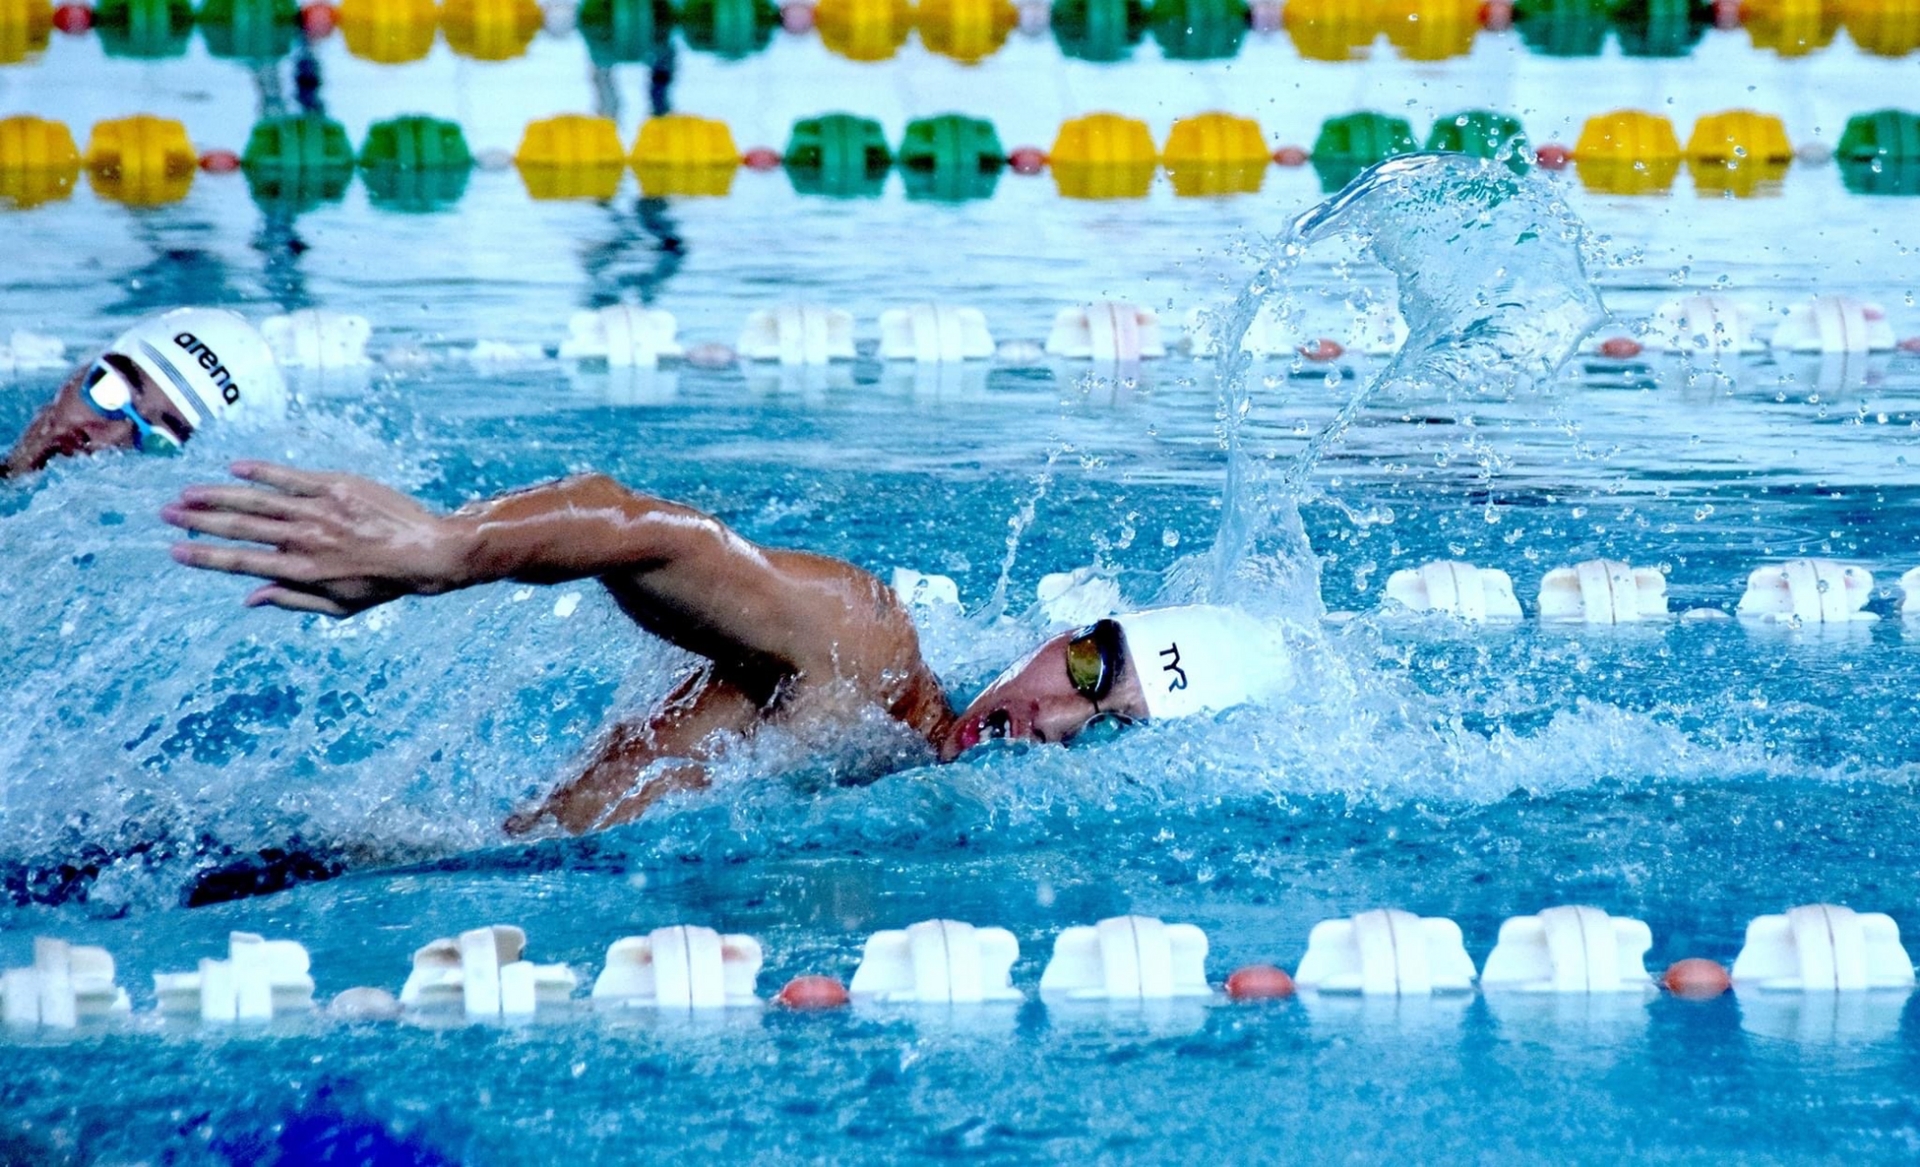 "Khi thi đấu, mạnh ai nấy bơi" - Kim Sơn chia sẻ